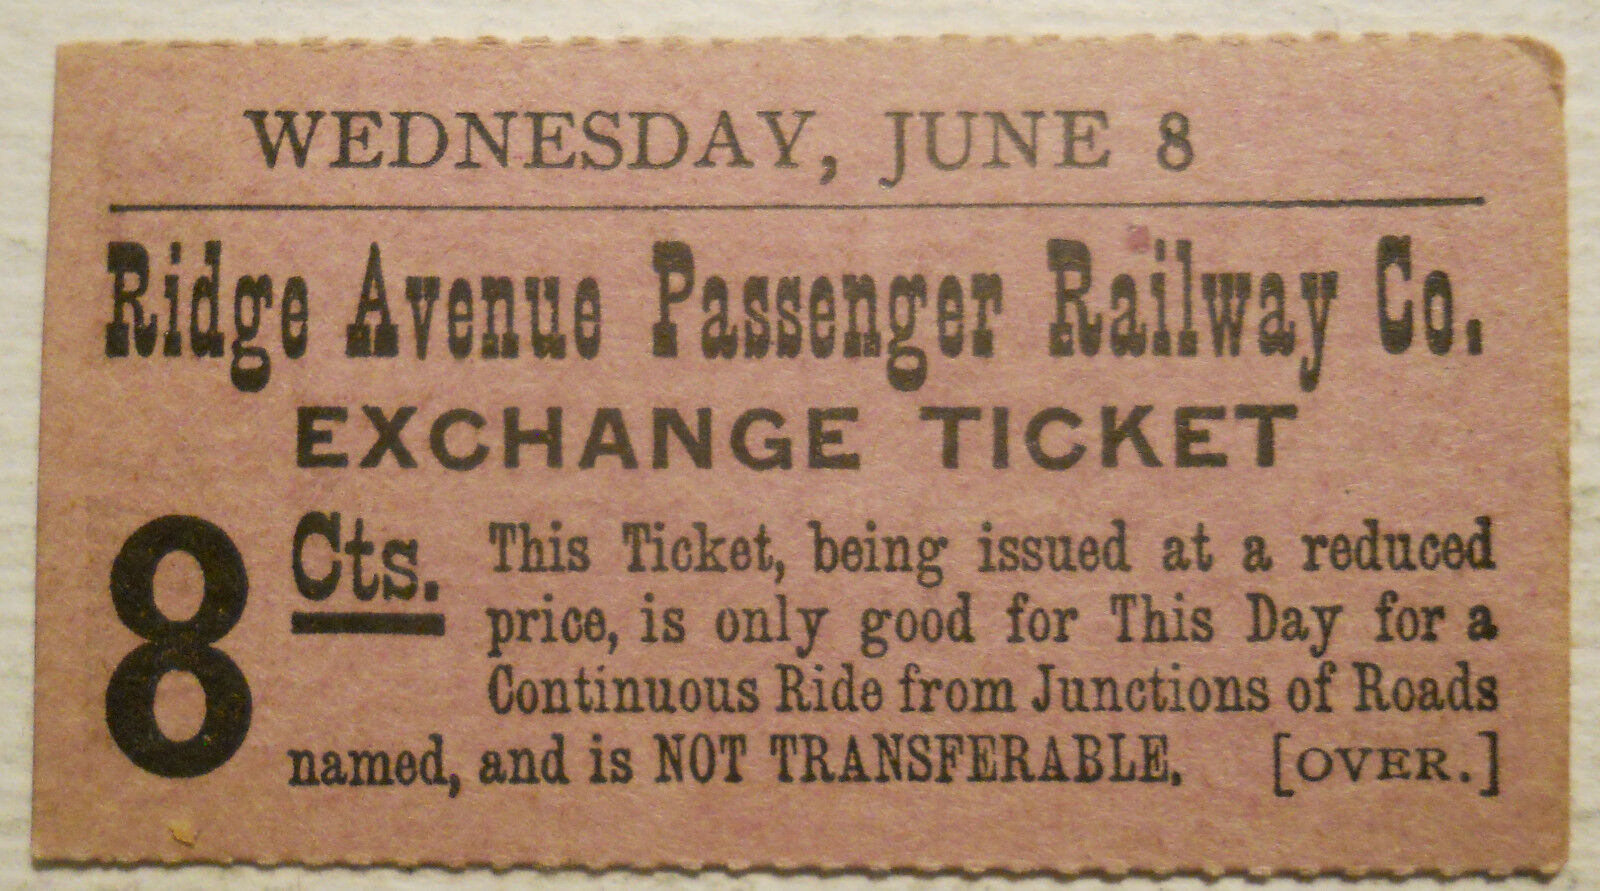 1880s-1890s Ridge Avenue Passenger Railway (Philadelphia, PA) Exchange Ticket 1